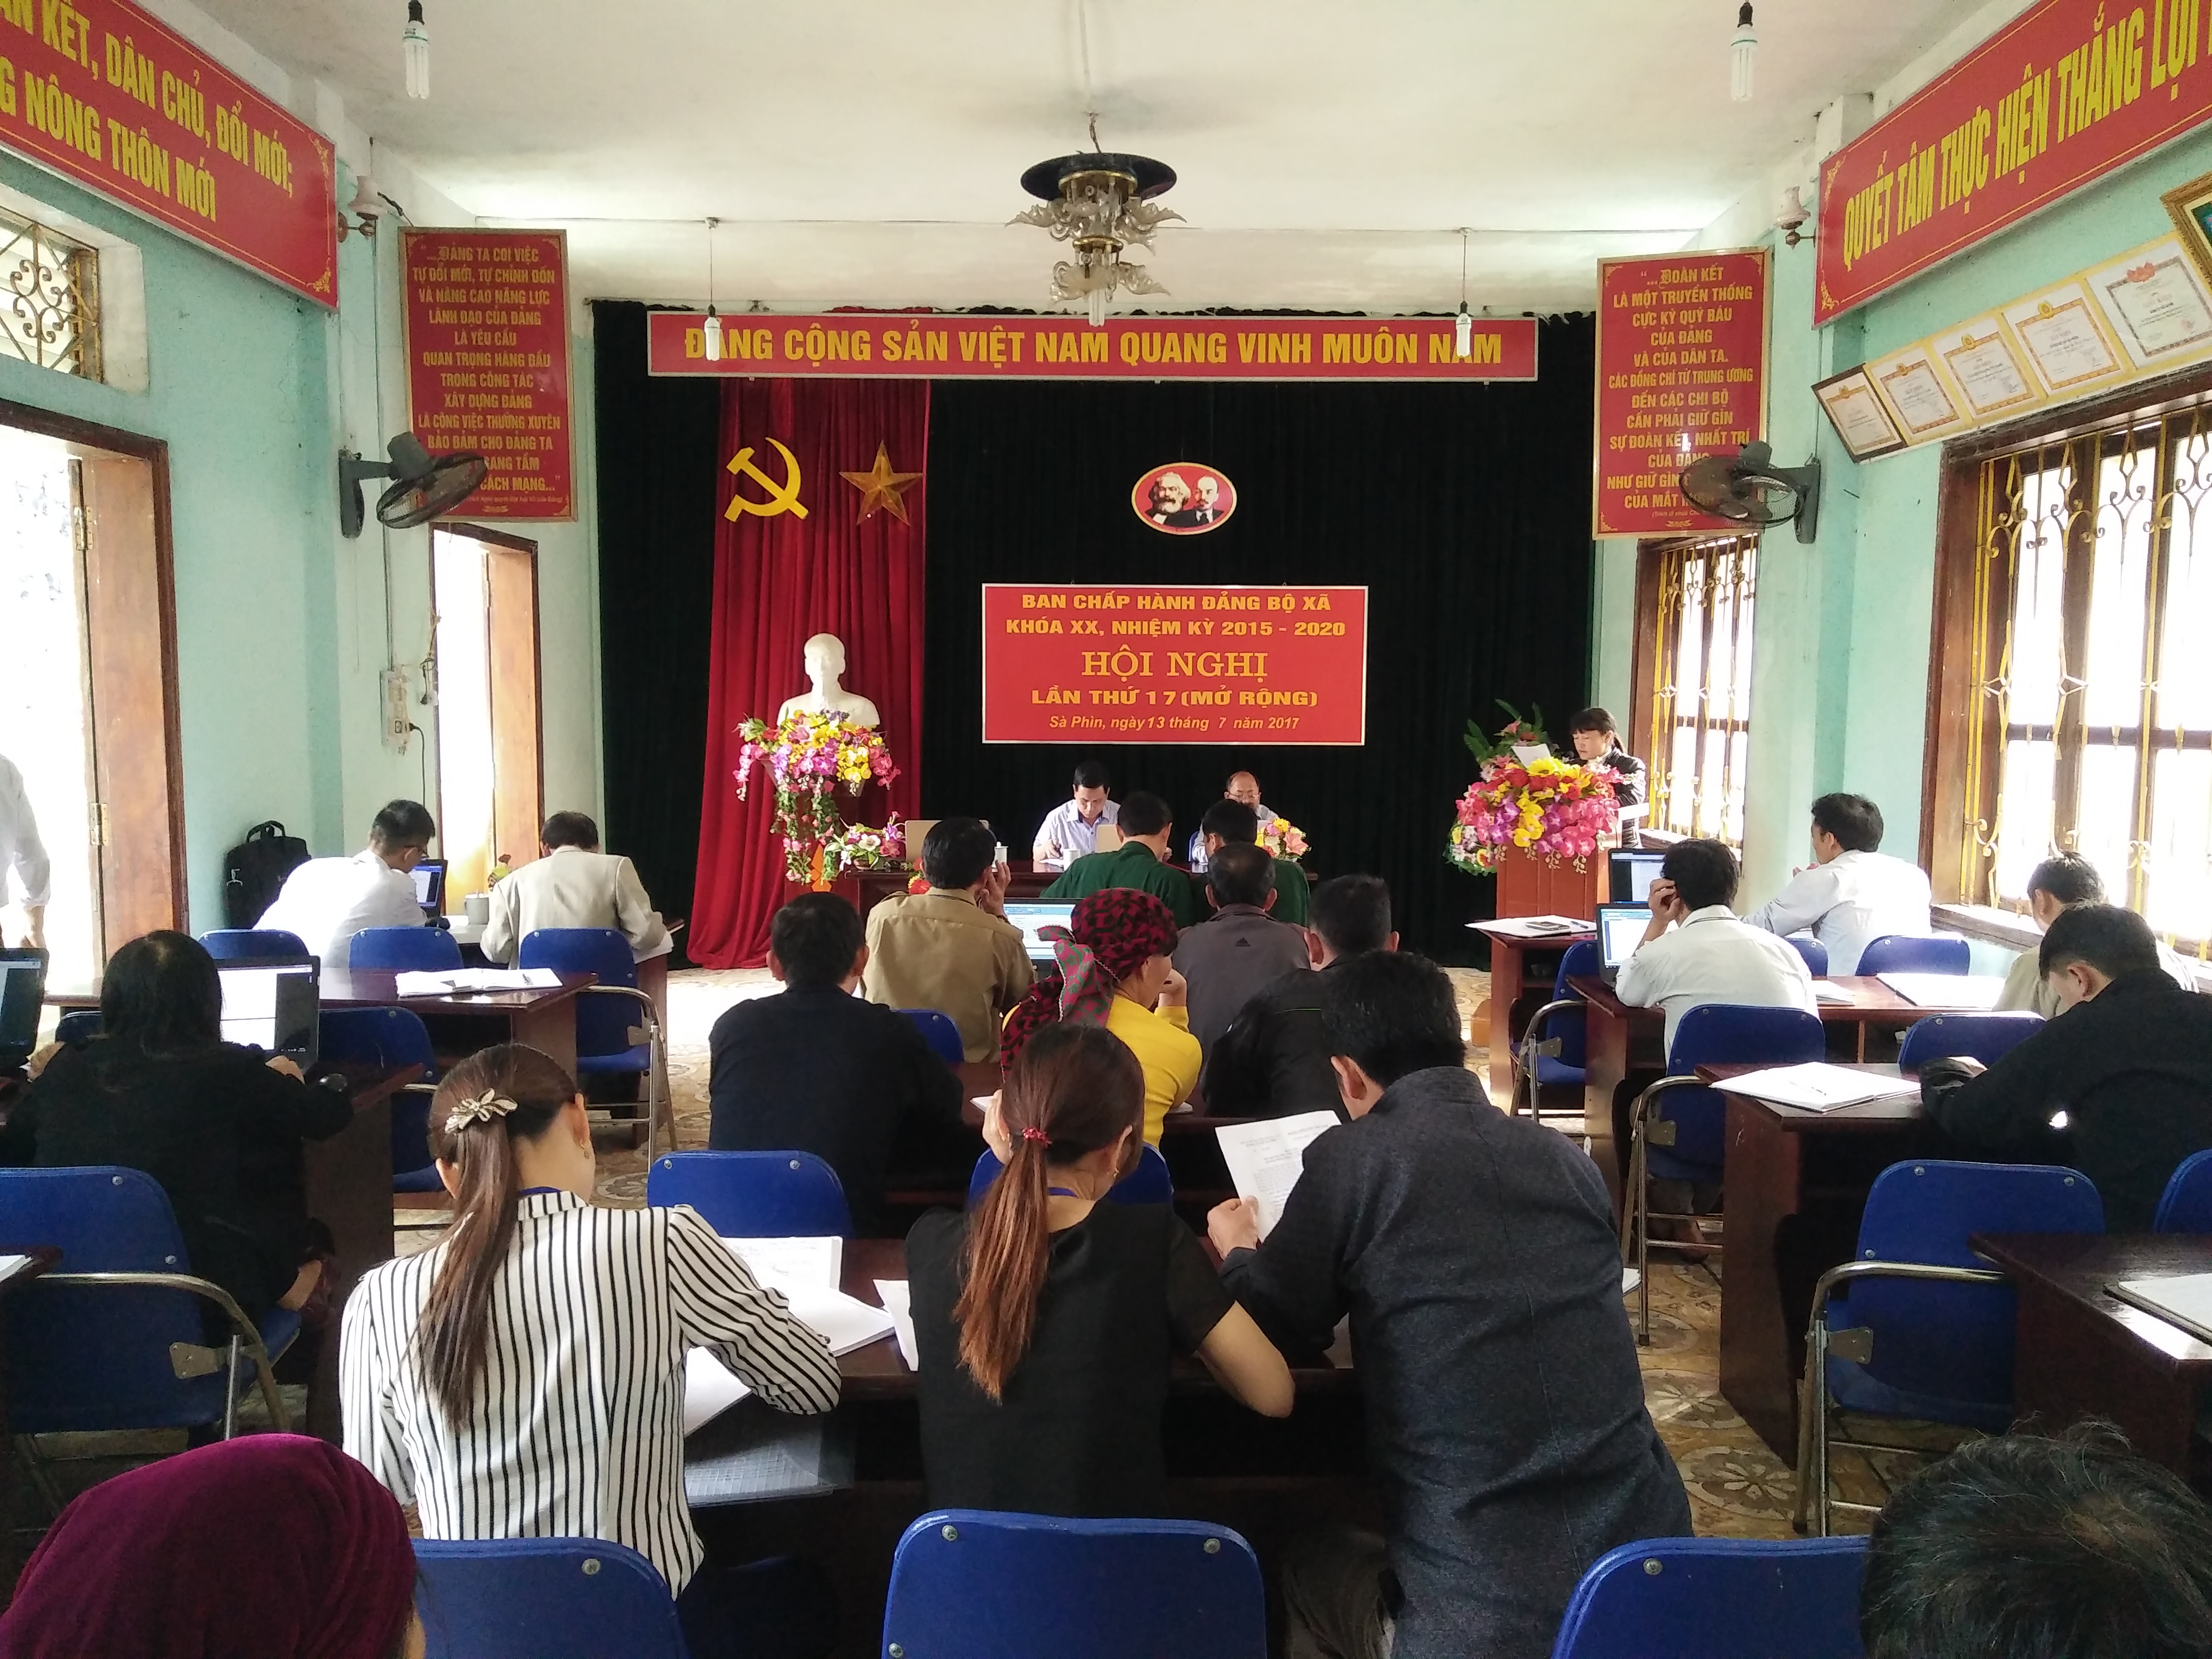 Hội nghị Ban chấp hành Đảng bộ xã Sà Phìn lần thứ 17 (mở rộng) khóa XX, nhiệm kỳ 2015-2020